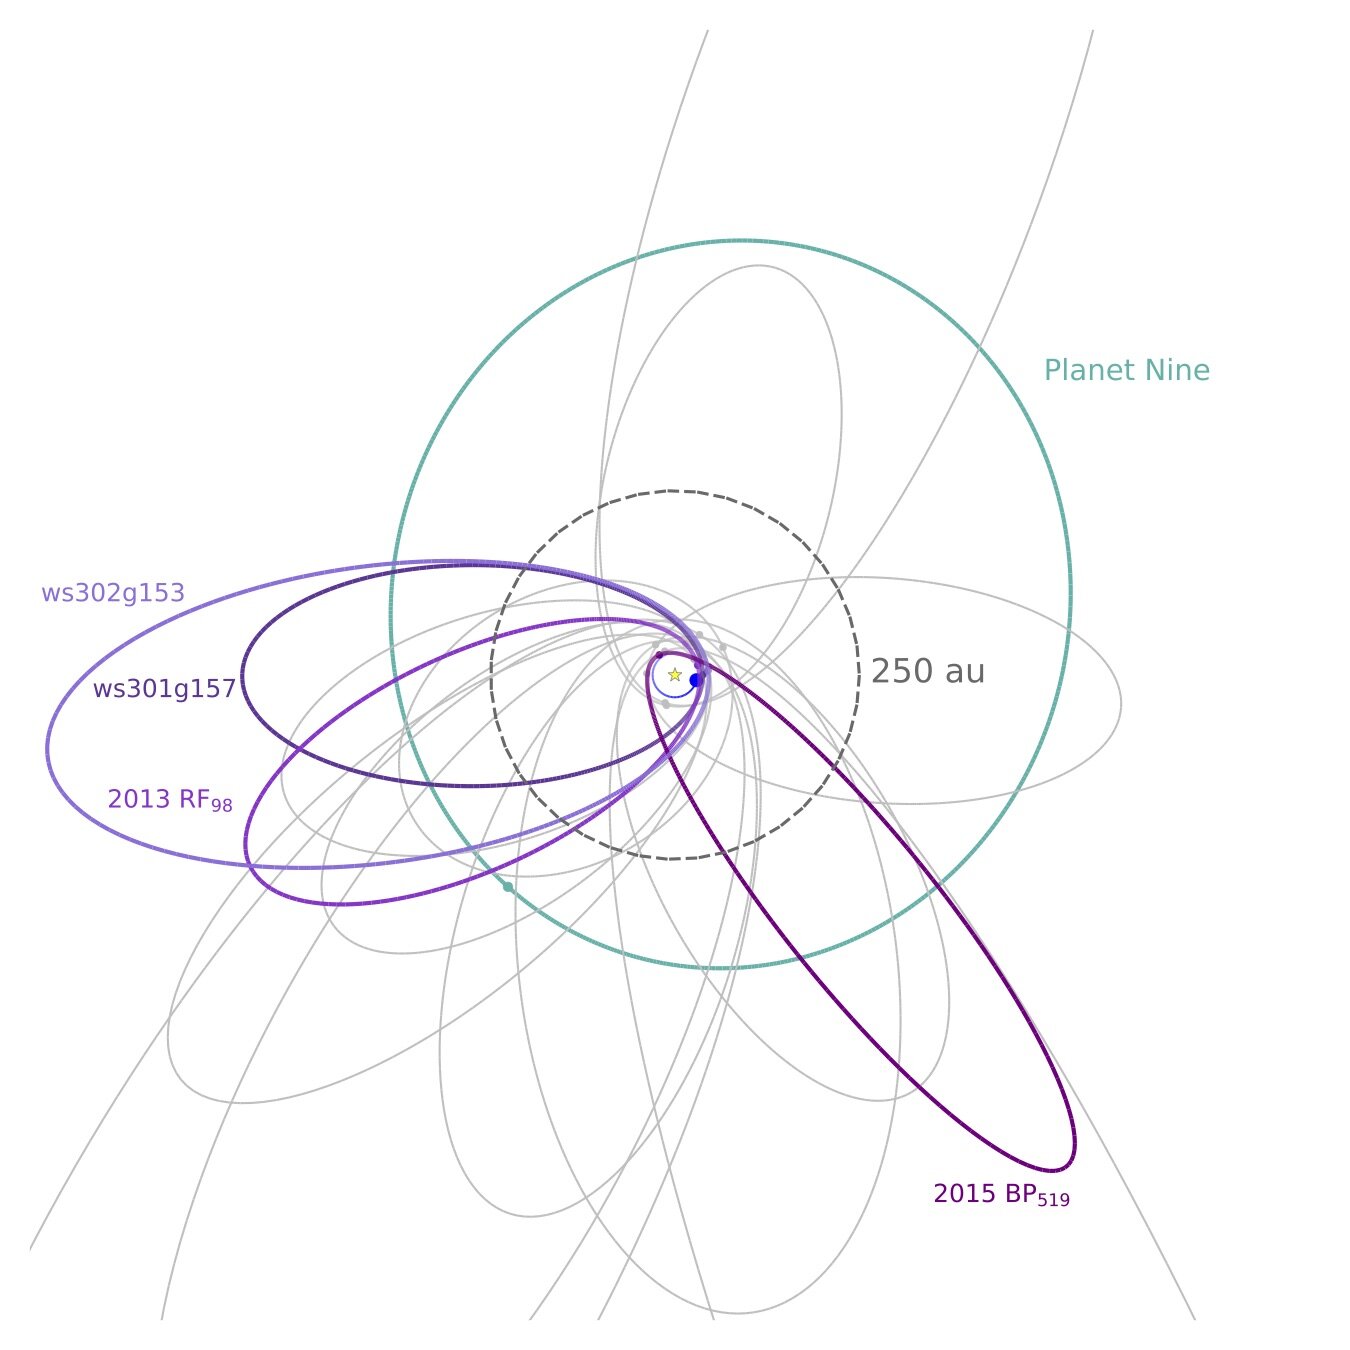 描绘遥远的太阳系。海王星的轨道是中心那个蓝色的小圆。暗能量巡天发现的极端TNOs用紫色表示，而其他巡天发现的极端TNOs用浅灰色表示。第九行星的提议…